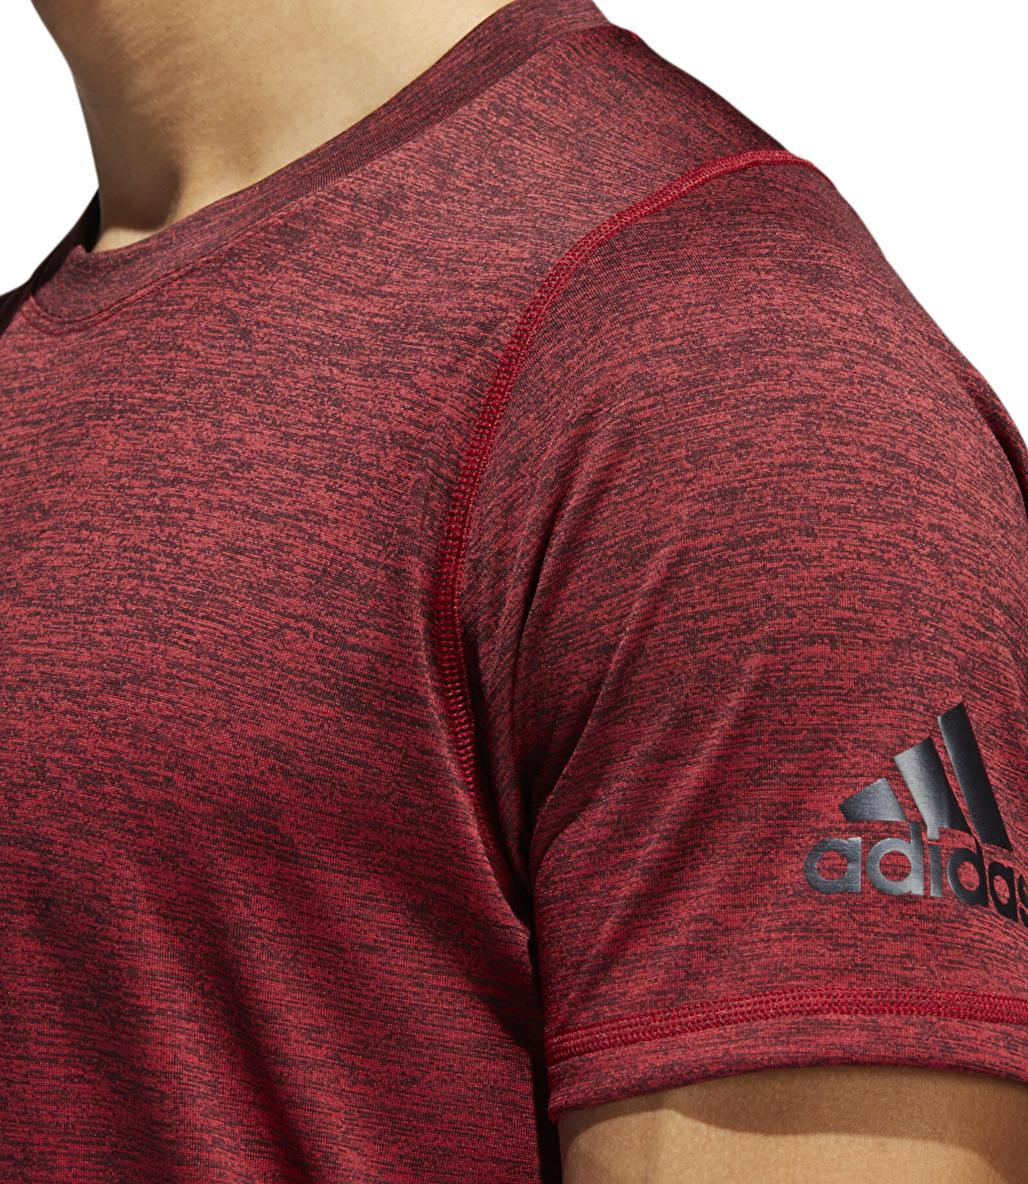 Adidas Freelift 360 Gradient Graphic T-Shirt Kırmızı